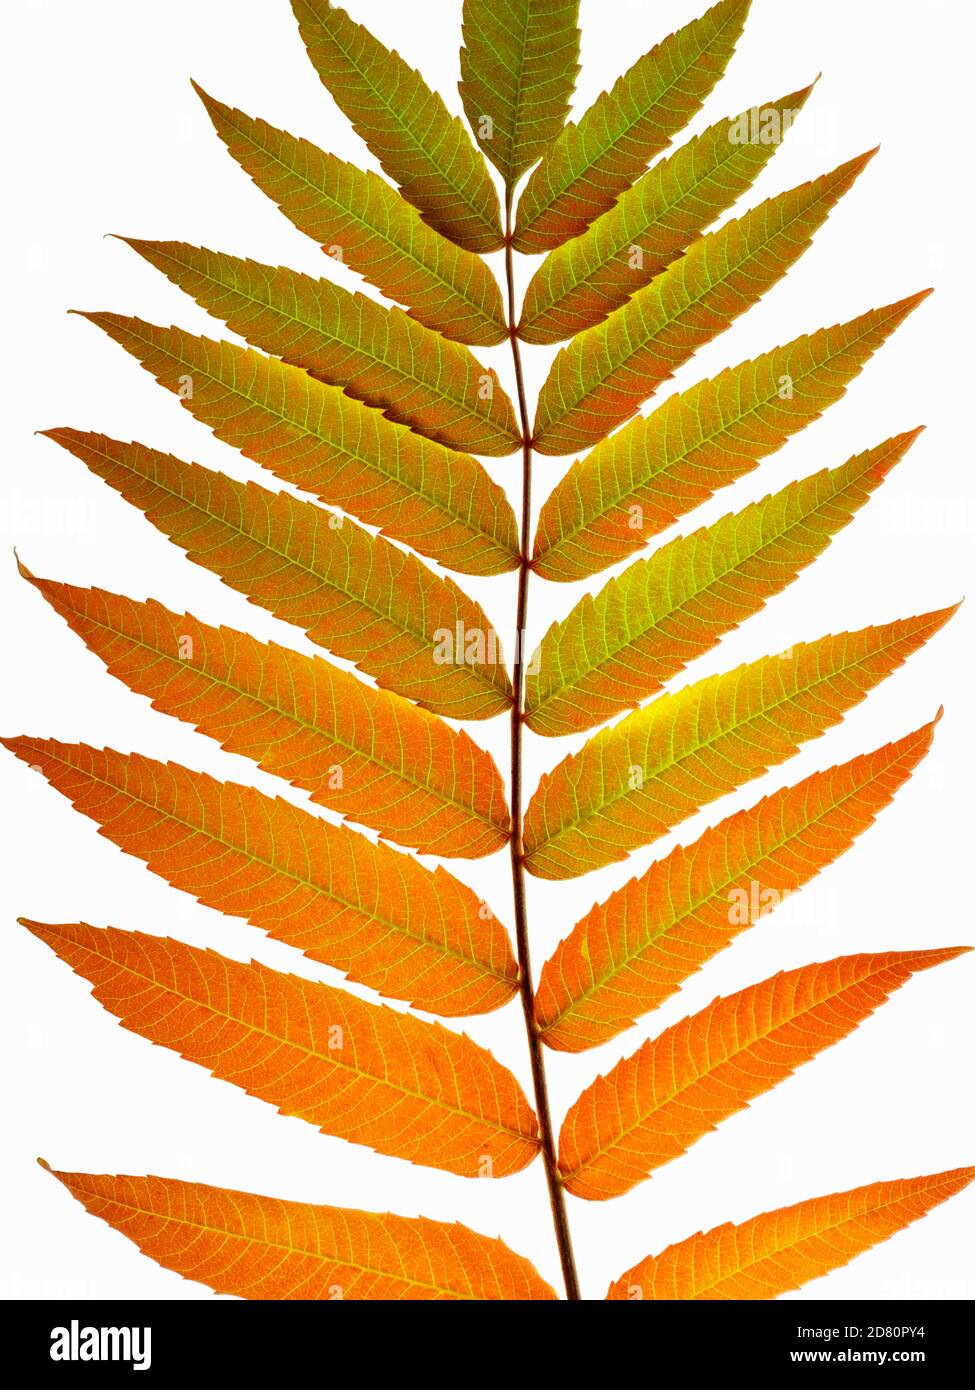 Nahaufnahme eines Sumac-Blattes, das im Herbst die Farben wechselt. Gattung Rhus, ein gutes Beispiel für Farben ändern sich wegen weniger Tageslicht Stunden. Stockfoto